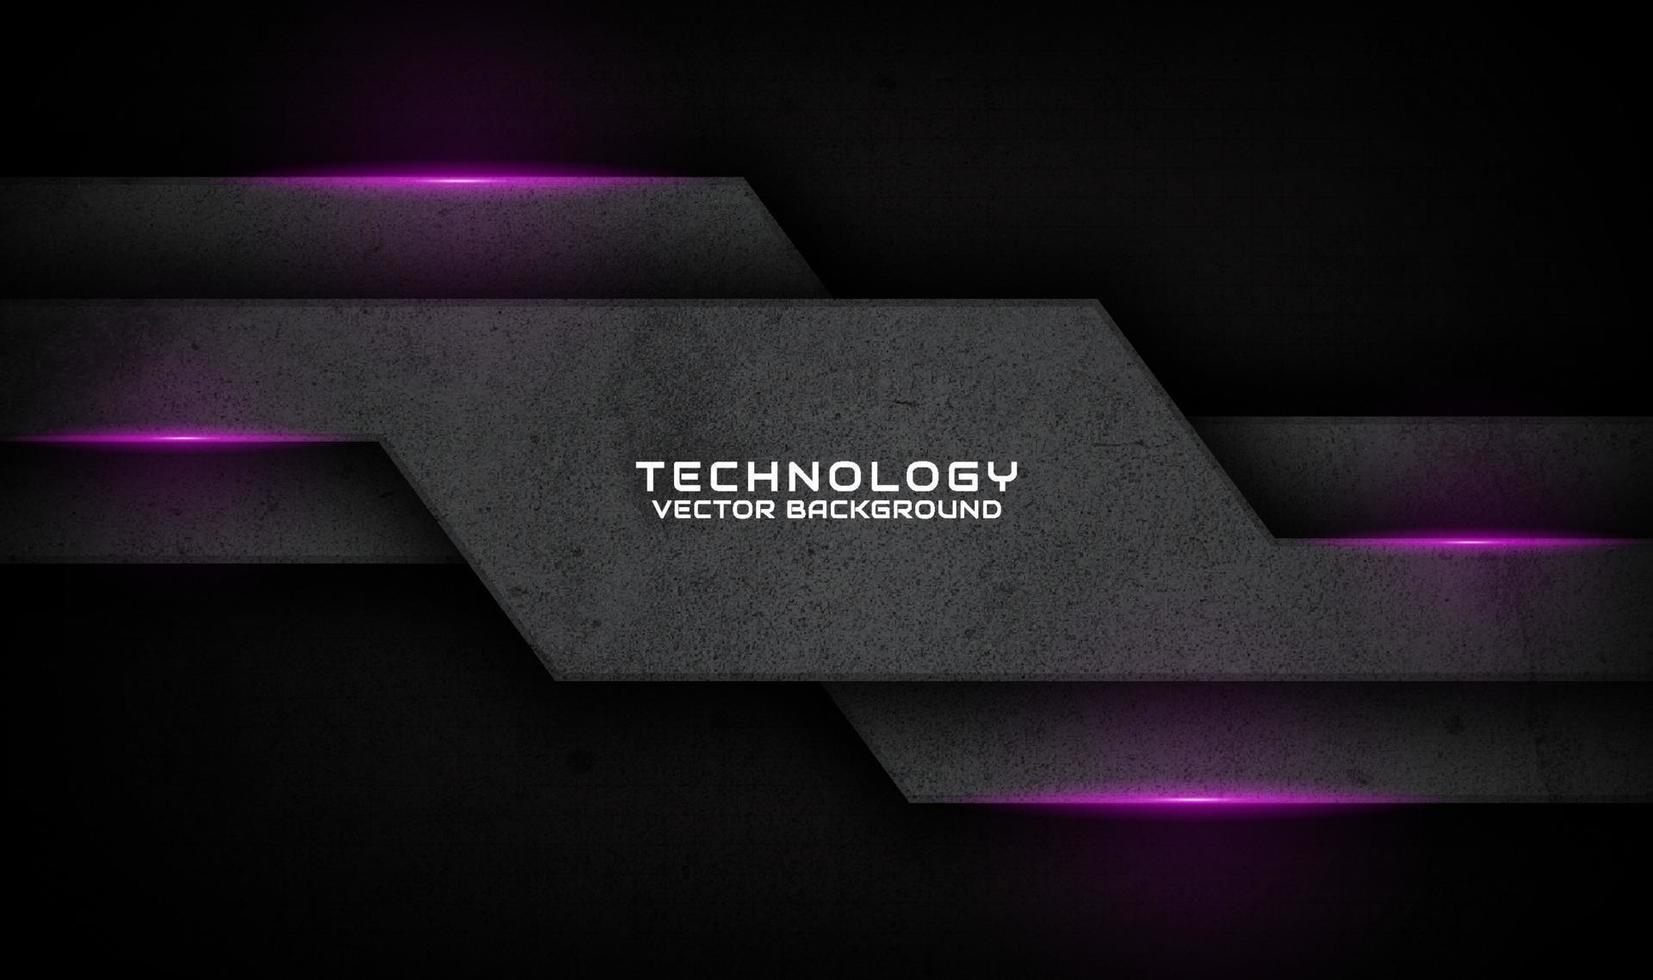 3D-Schwarz-Techno-Zusammenfassungshintergrund-Überlappungsschicht auf dunklem Raum mit violetter Lichteffektdekoration. grafikdesignelement schmutziges stilkonzept für banner, flyer, karte, broschürencover oder zielseite vektor